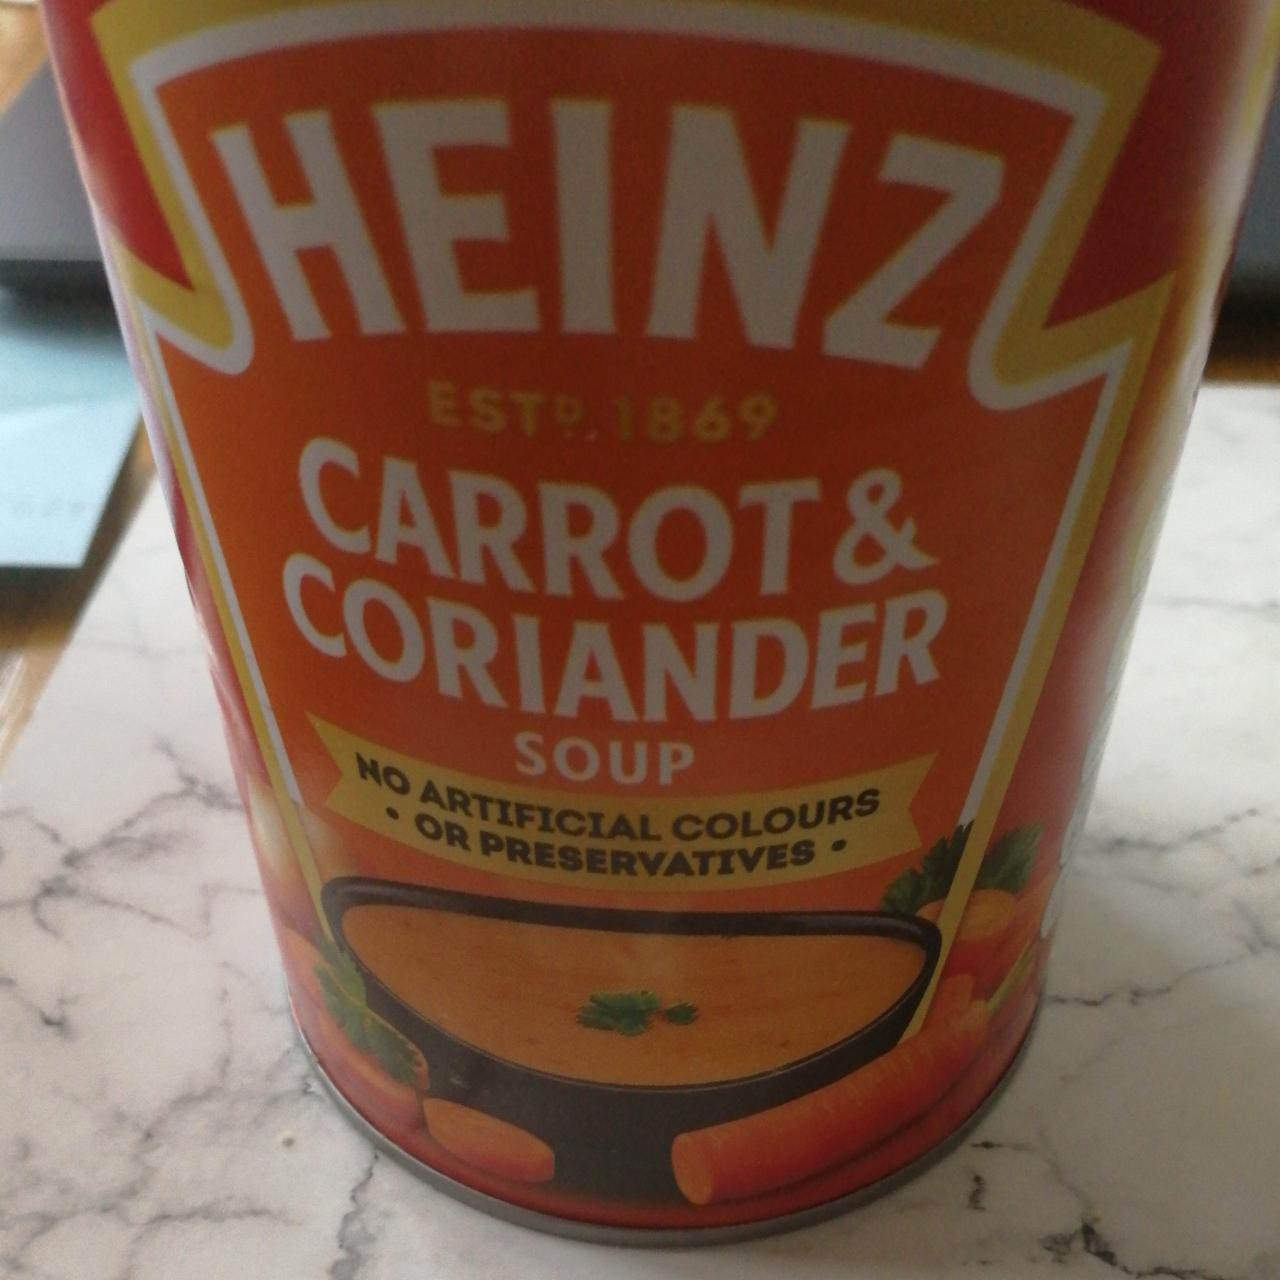 Fotografie - Carrot & coriander soup Heinz